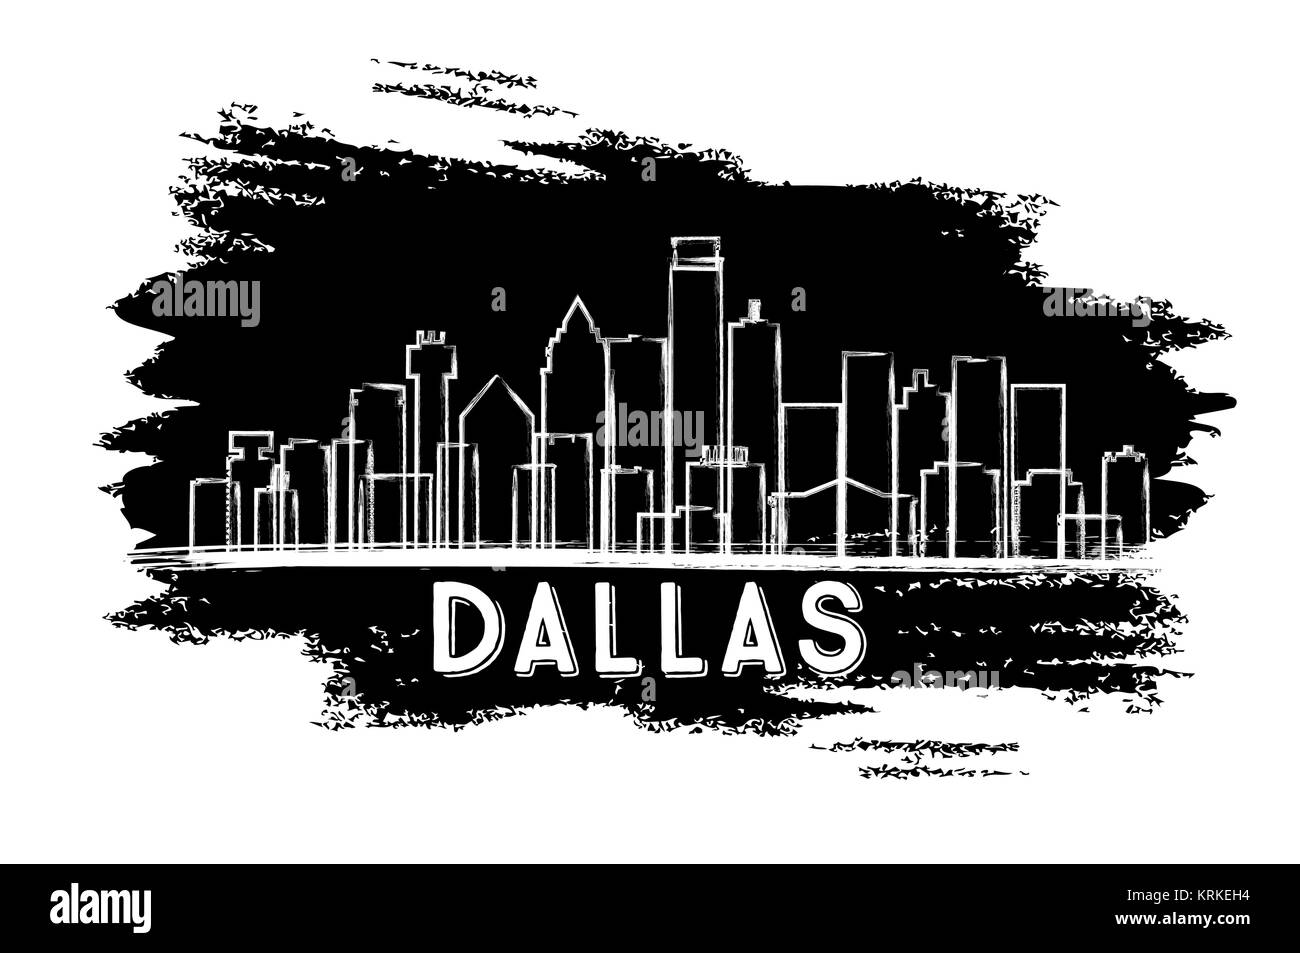 Dallas Texas USA City Skyline Silhouette. Croquis dessinés à la main. Les voyages d'affaires et tourisme Concept avec l'architecture moderne. Vector Illustration. Illustration de Vecteur